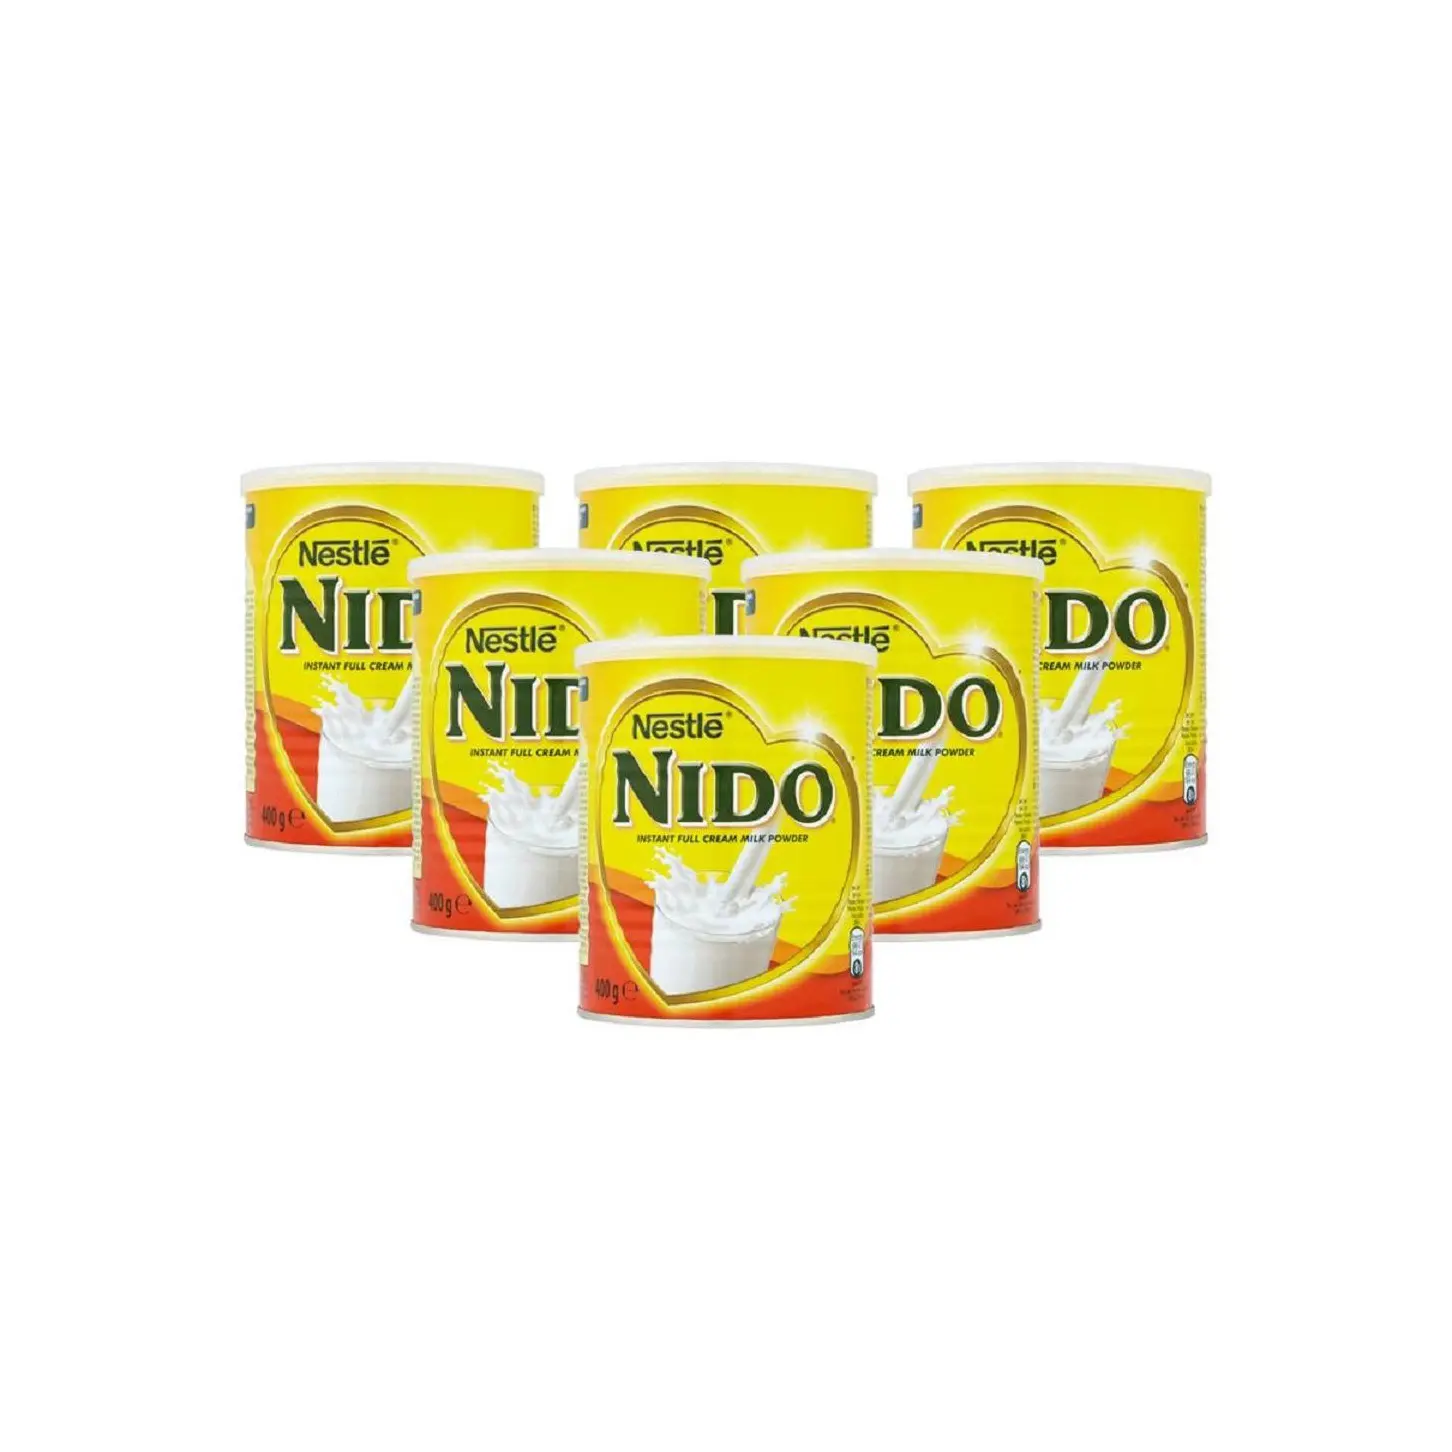 Mejor Nido venta de leche en polvo/Nestlé Nido/Leche Nido 400g, 900g,1800g, 2500